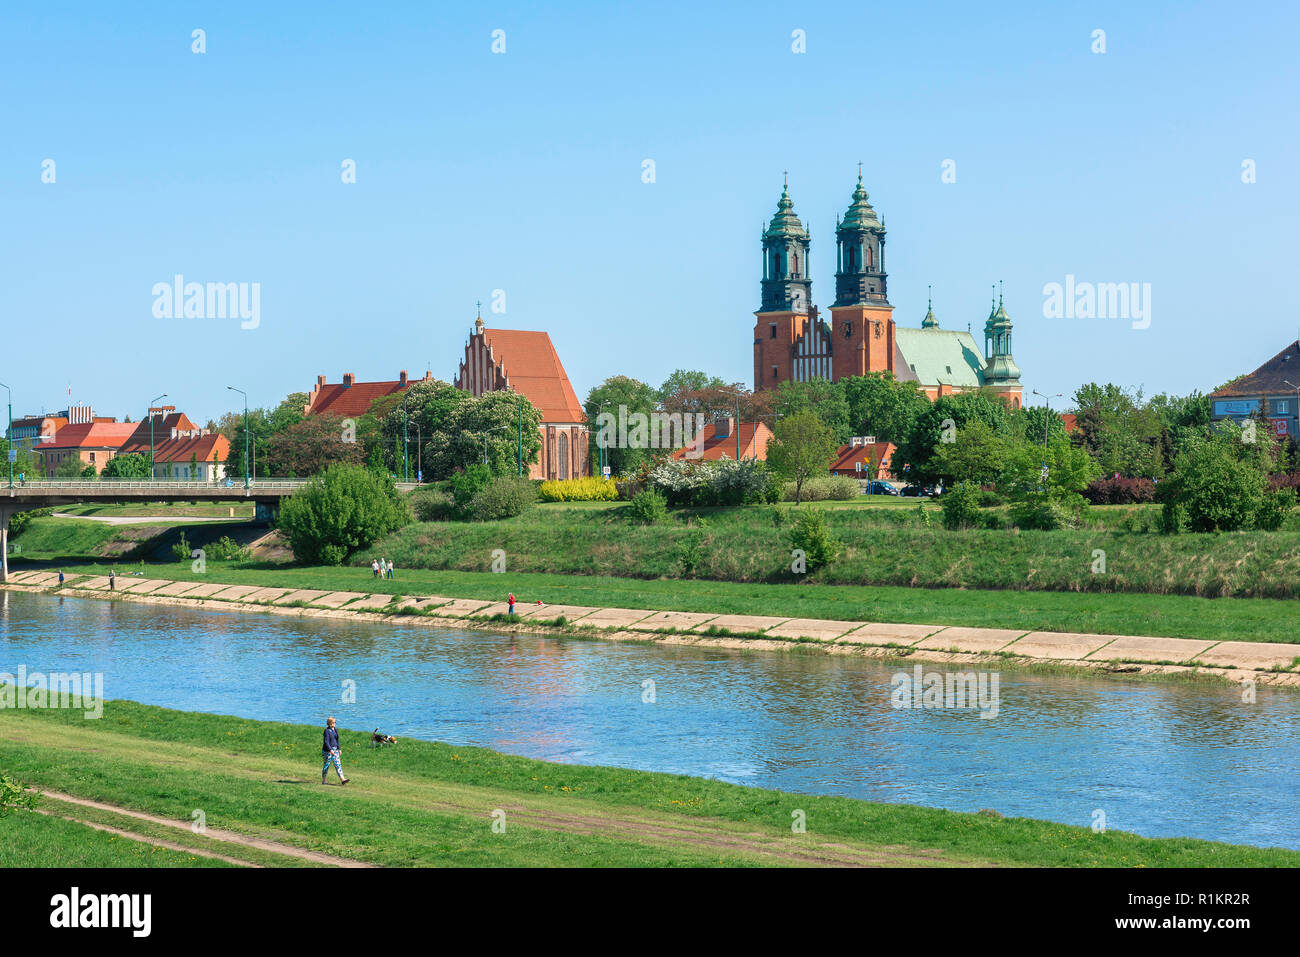 L'île de la cathédrale de Poznan, vue sur l'horizon de l'île de la cathédrale (Ostrow Tumski) avec la rivière Warta au premier plan, Poznan, Pologne. Banque D'Images